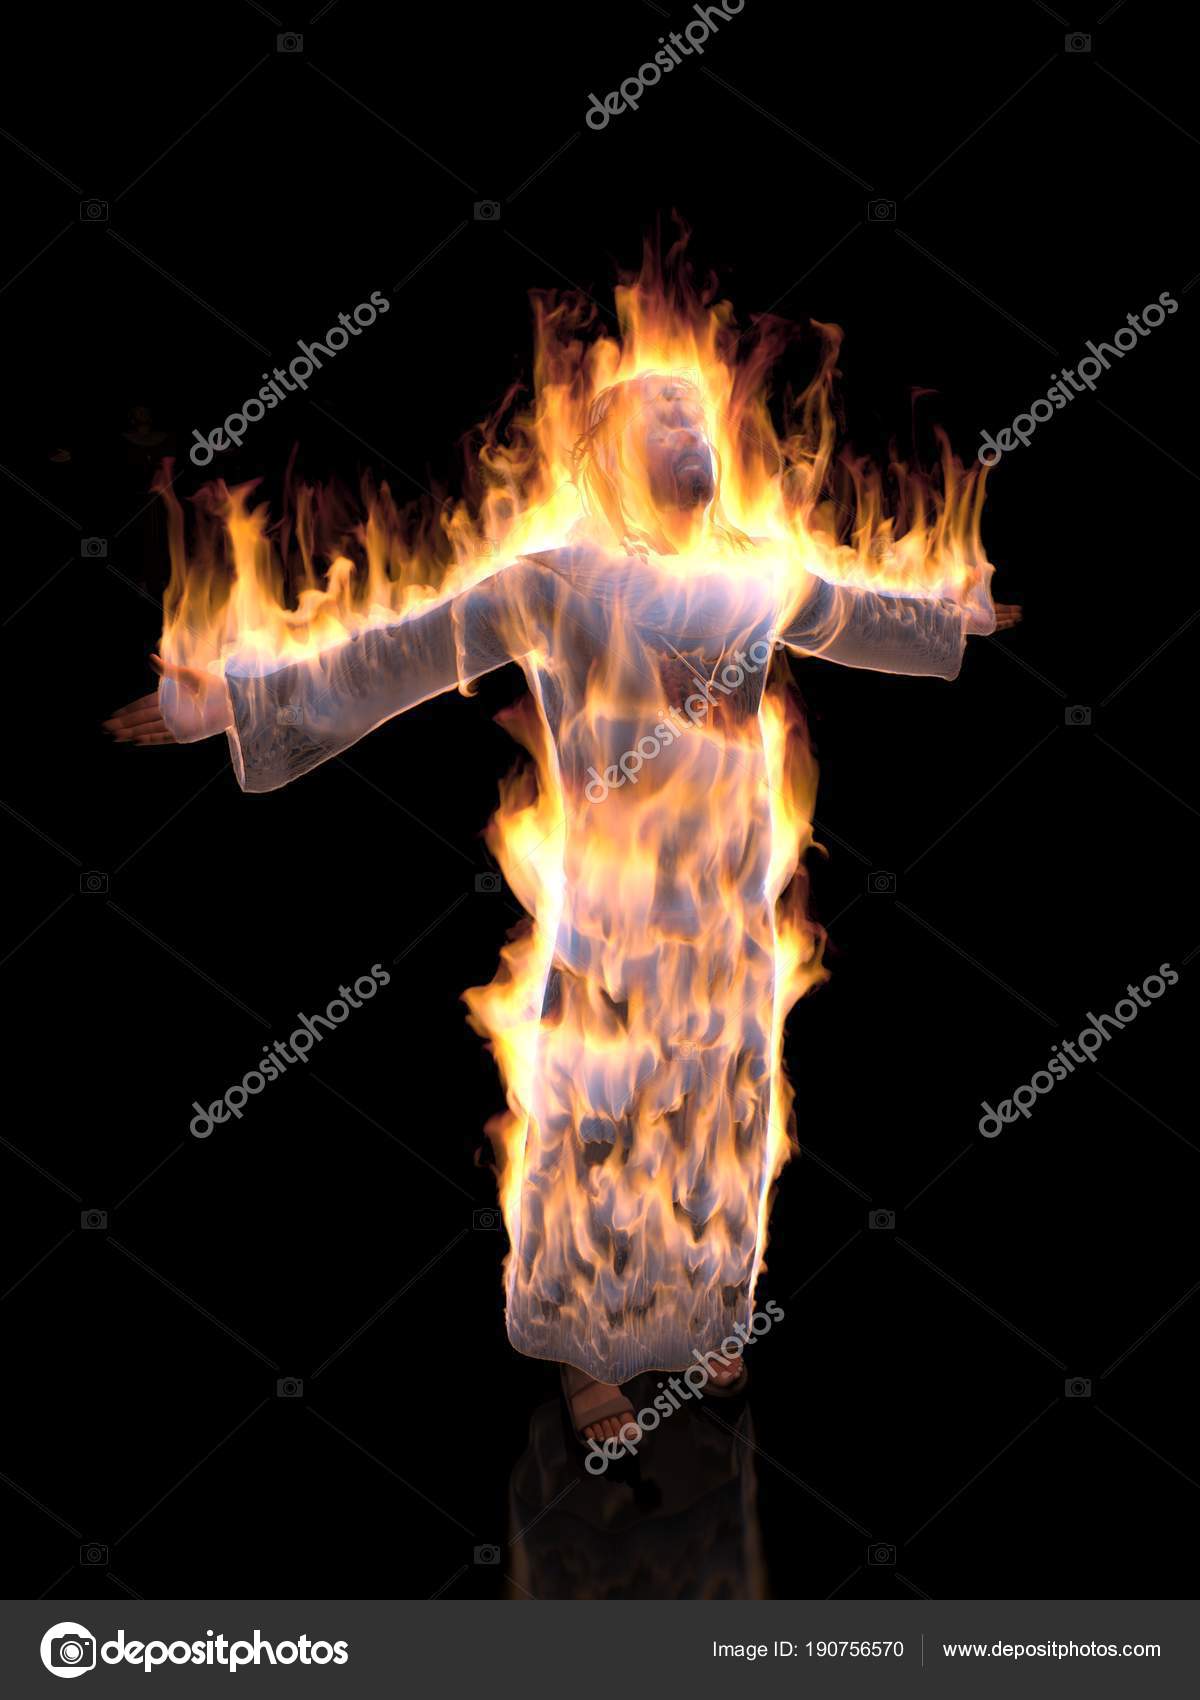 Jesus Christ Fire - HD Wallpaper 